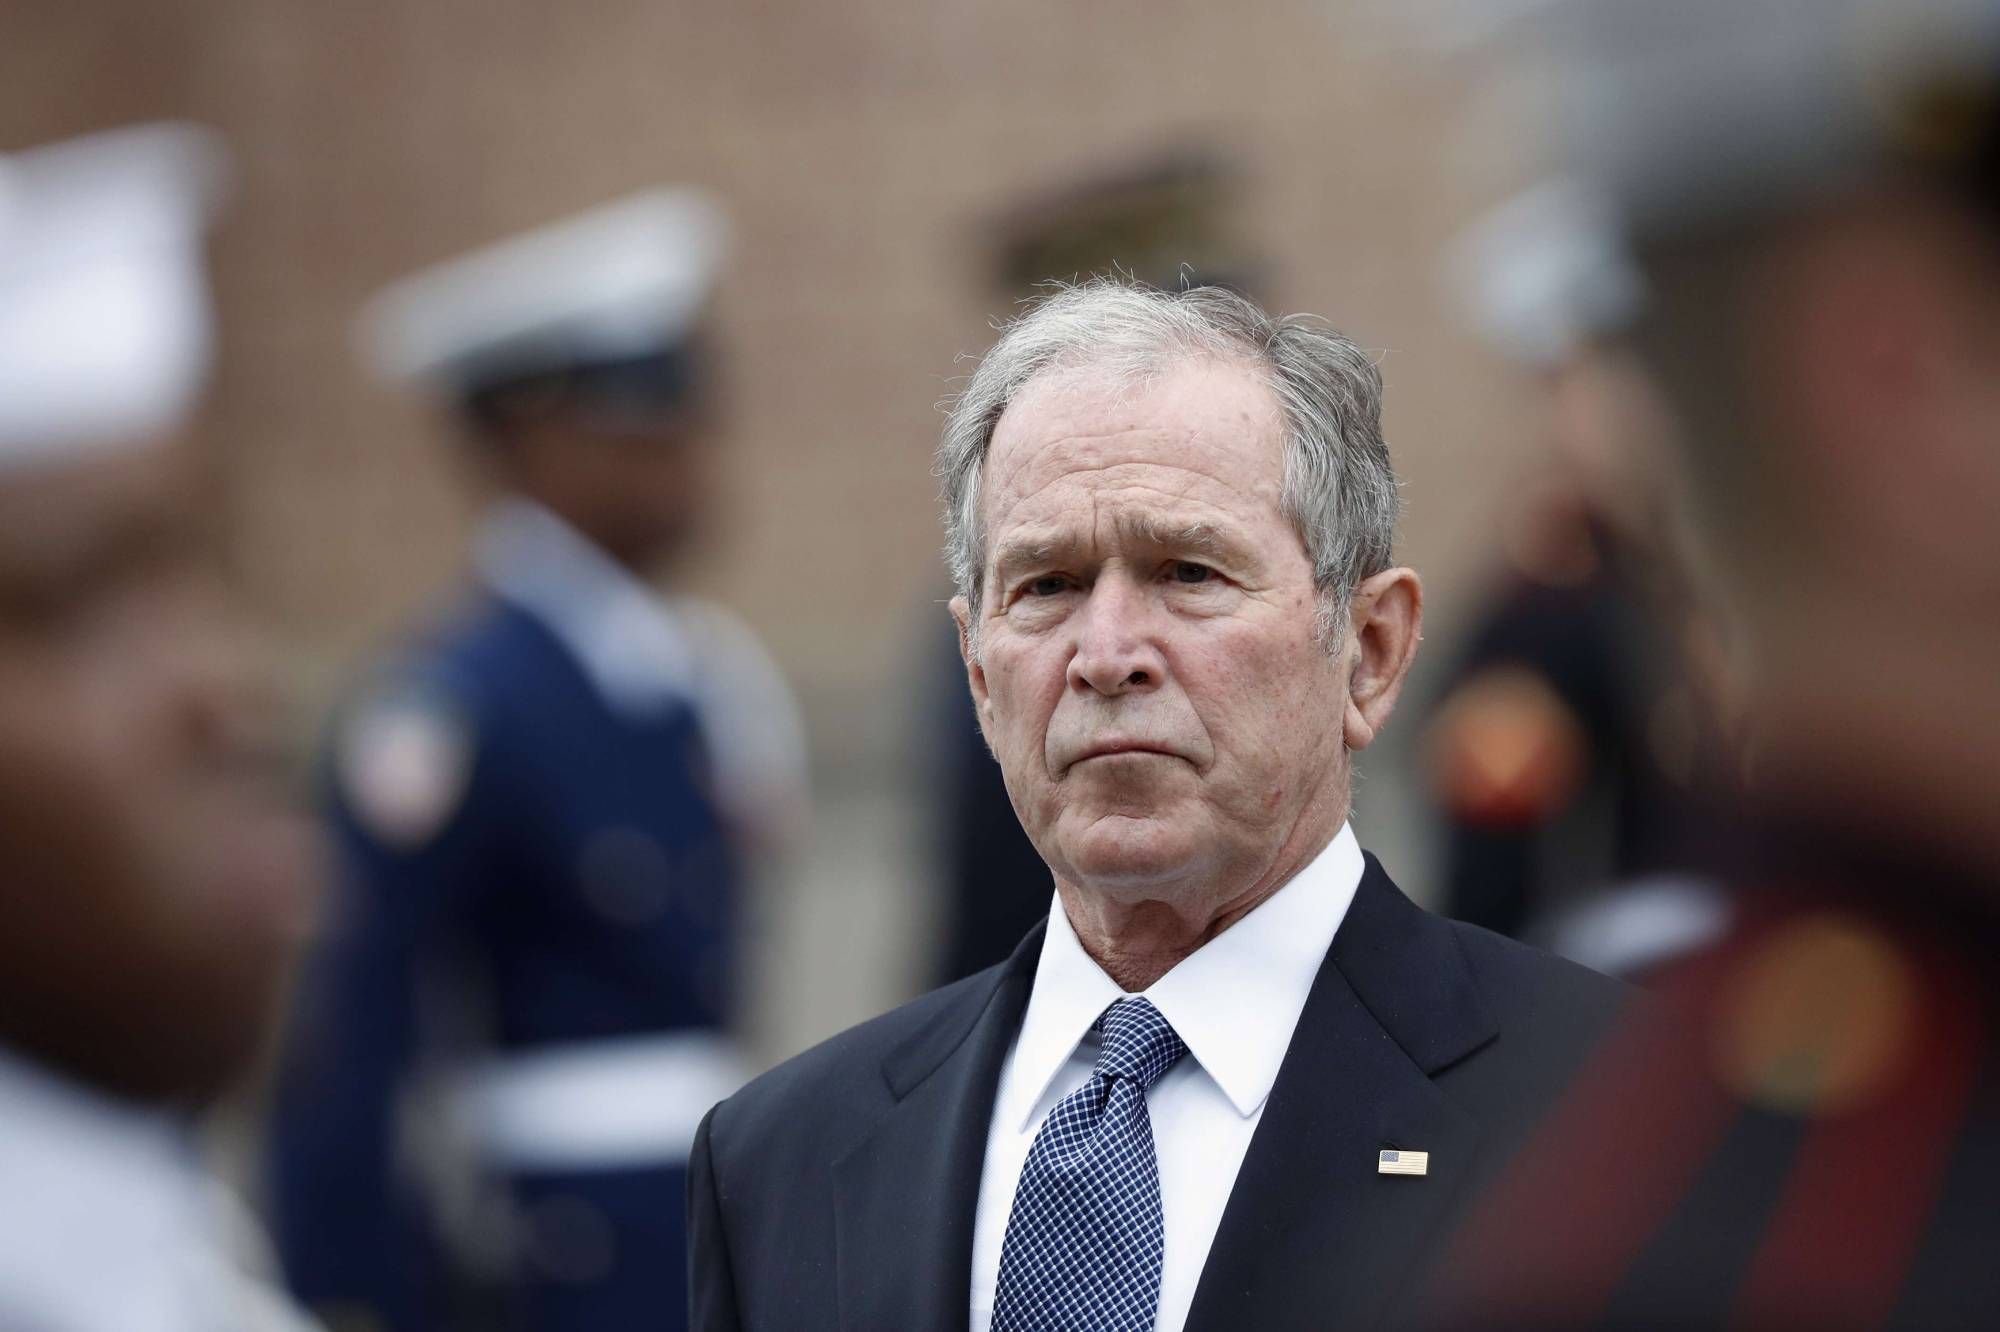 George-W.-Bush-appelle-les-Etats-Unis-a-l-examen-de-leurs-echecs-tragiques.jpg